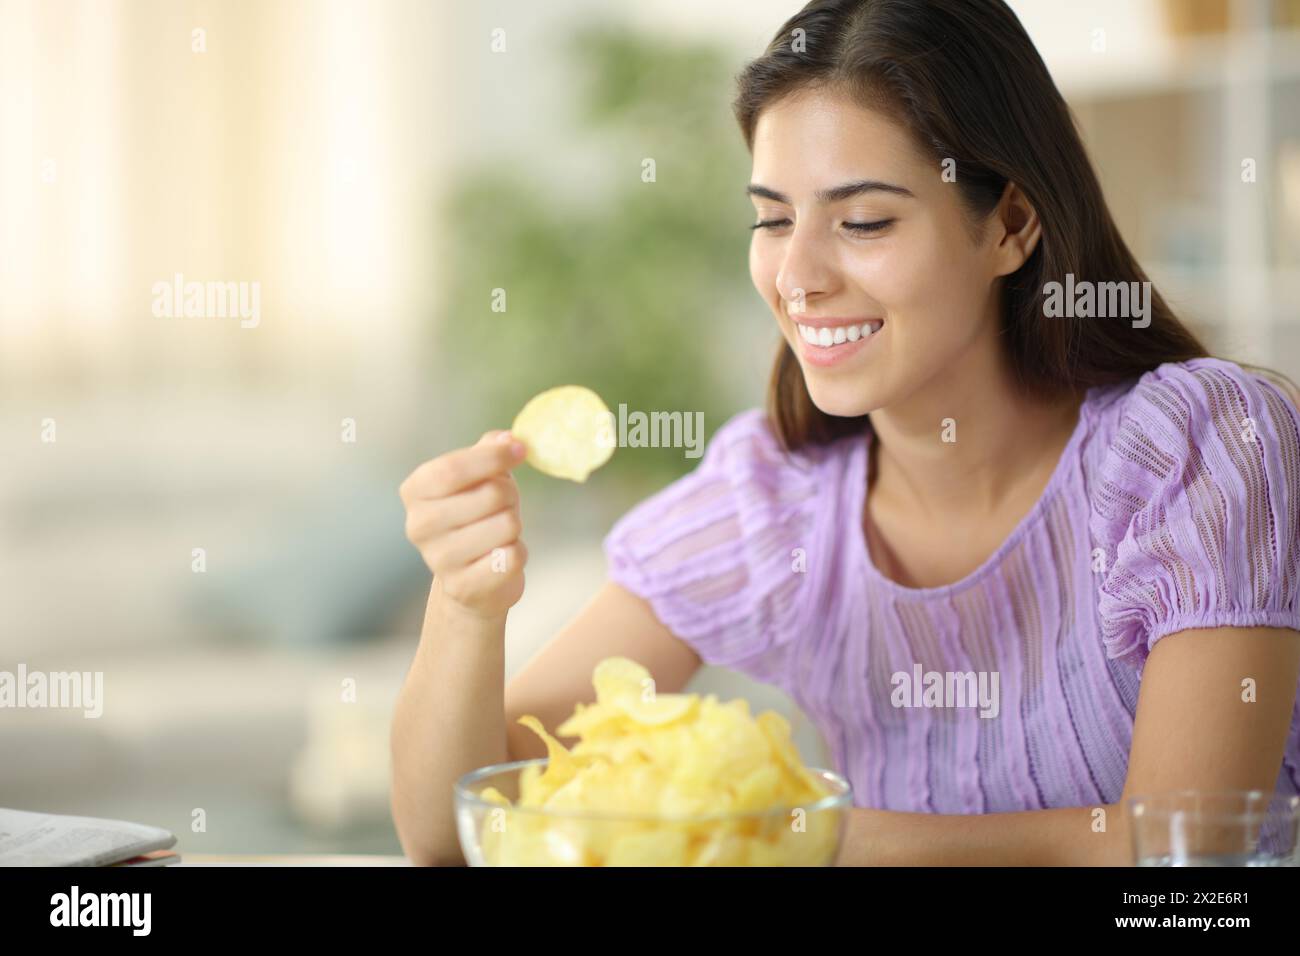 Femme heureuse mangeant des chips souriante assise à la maison Banque D'Images